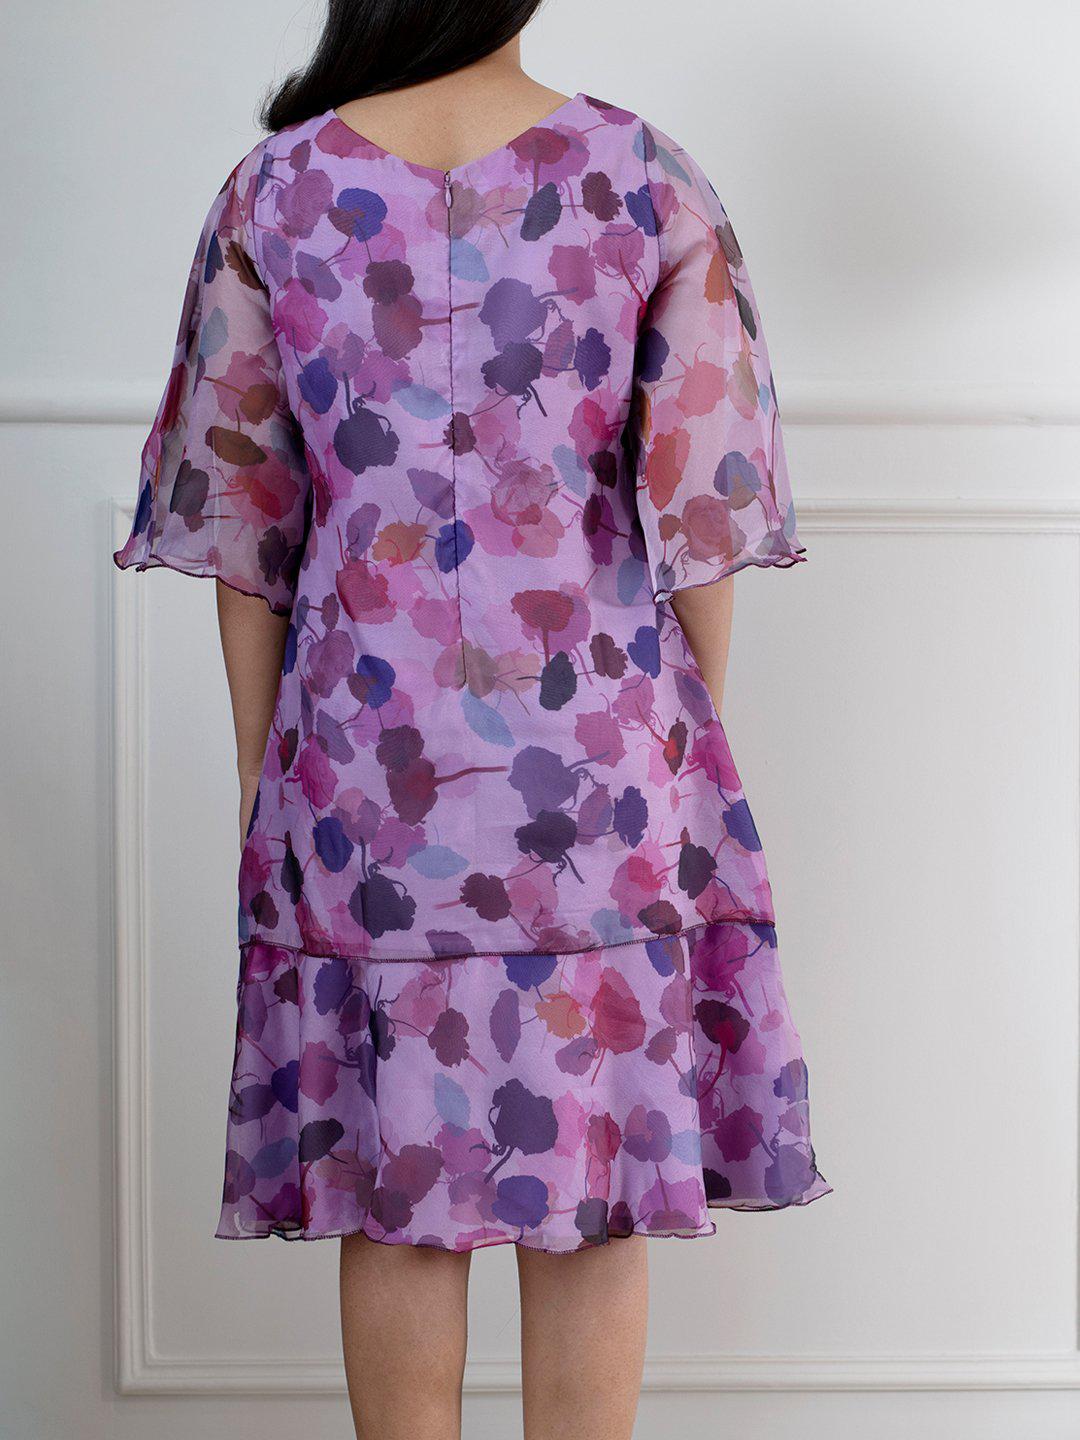 Floral Print A Line Dress For Women - Mauve